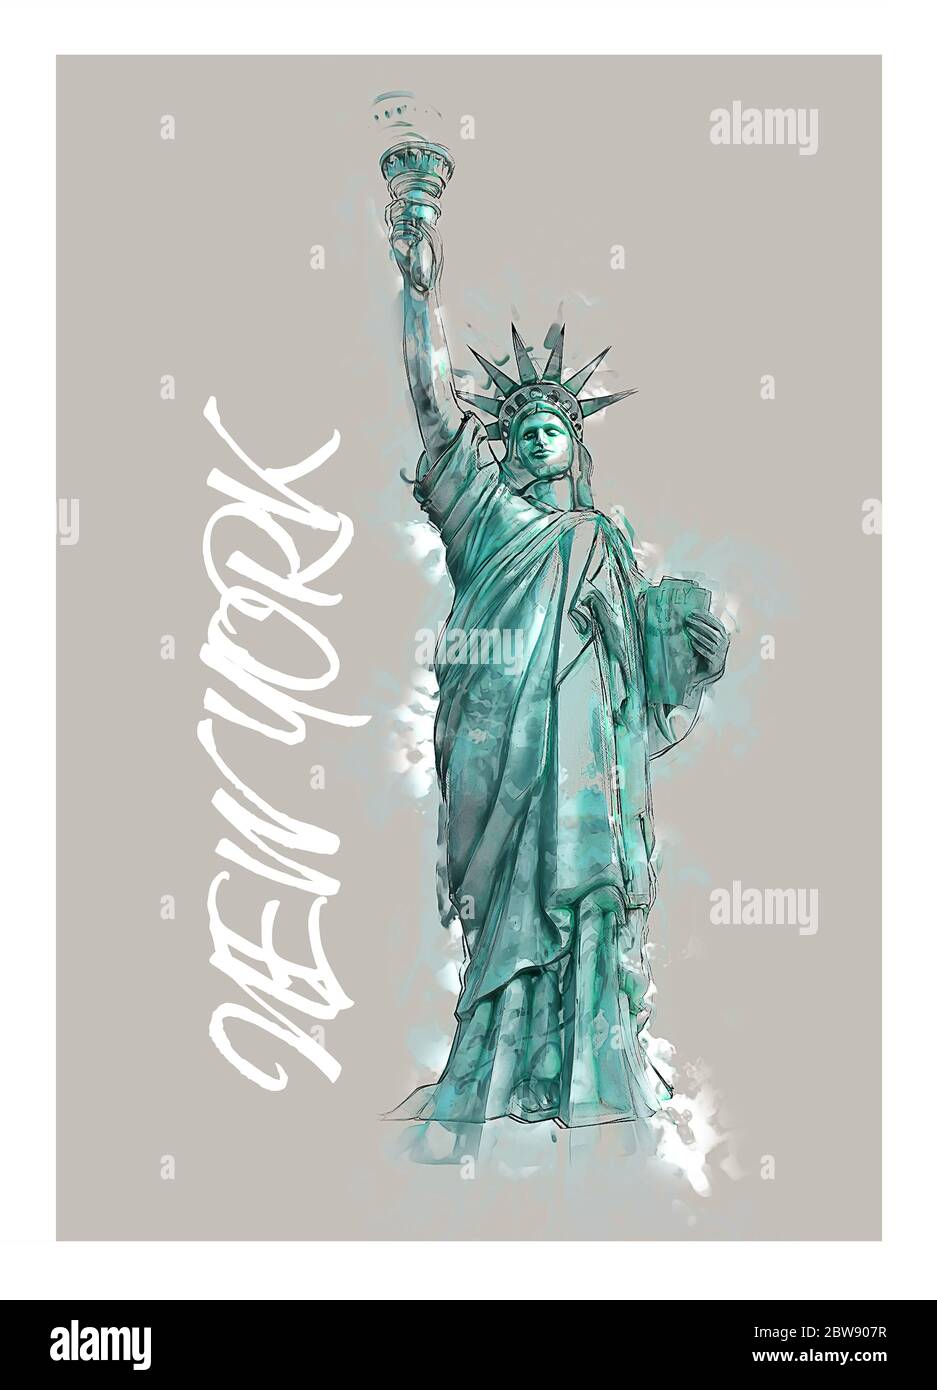 Illustration de la Statue de la liberté de New York - verticale Banque D'Images